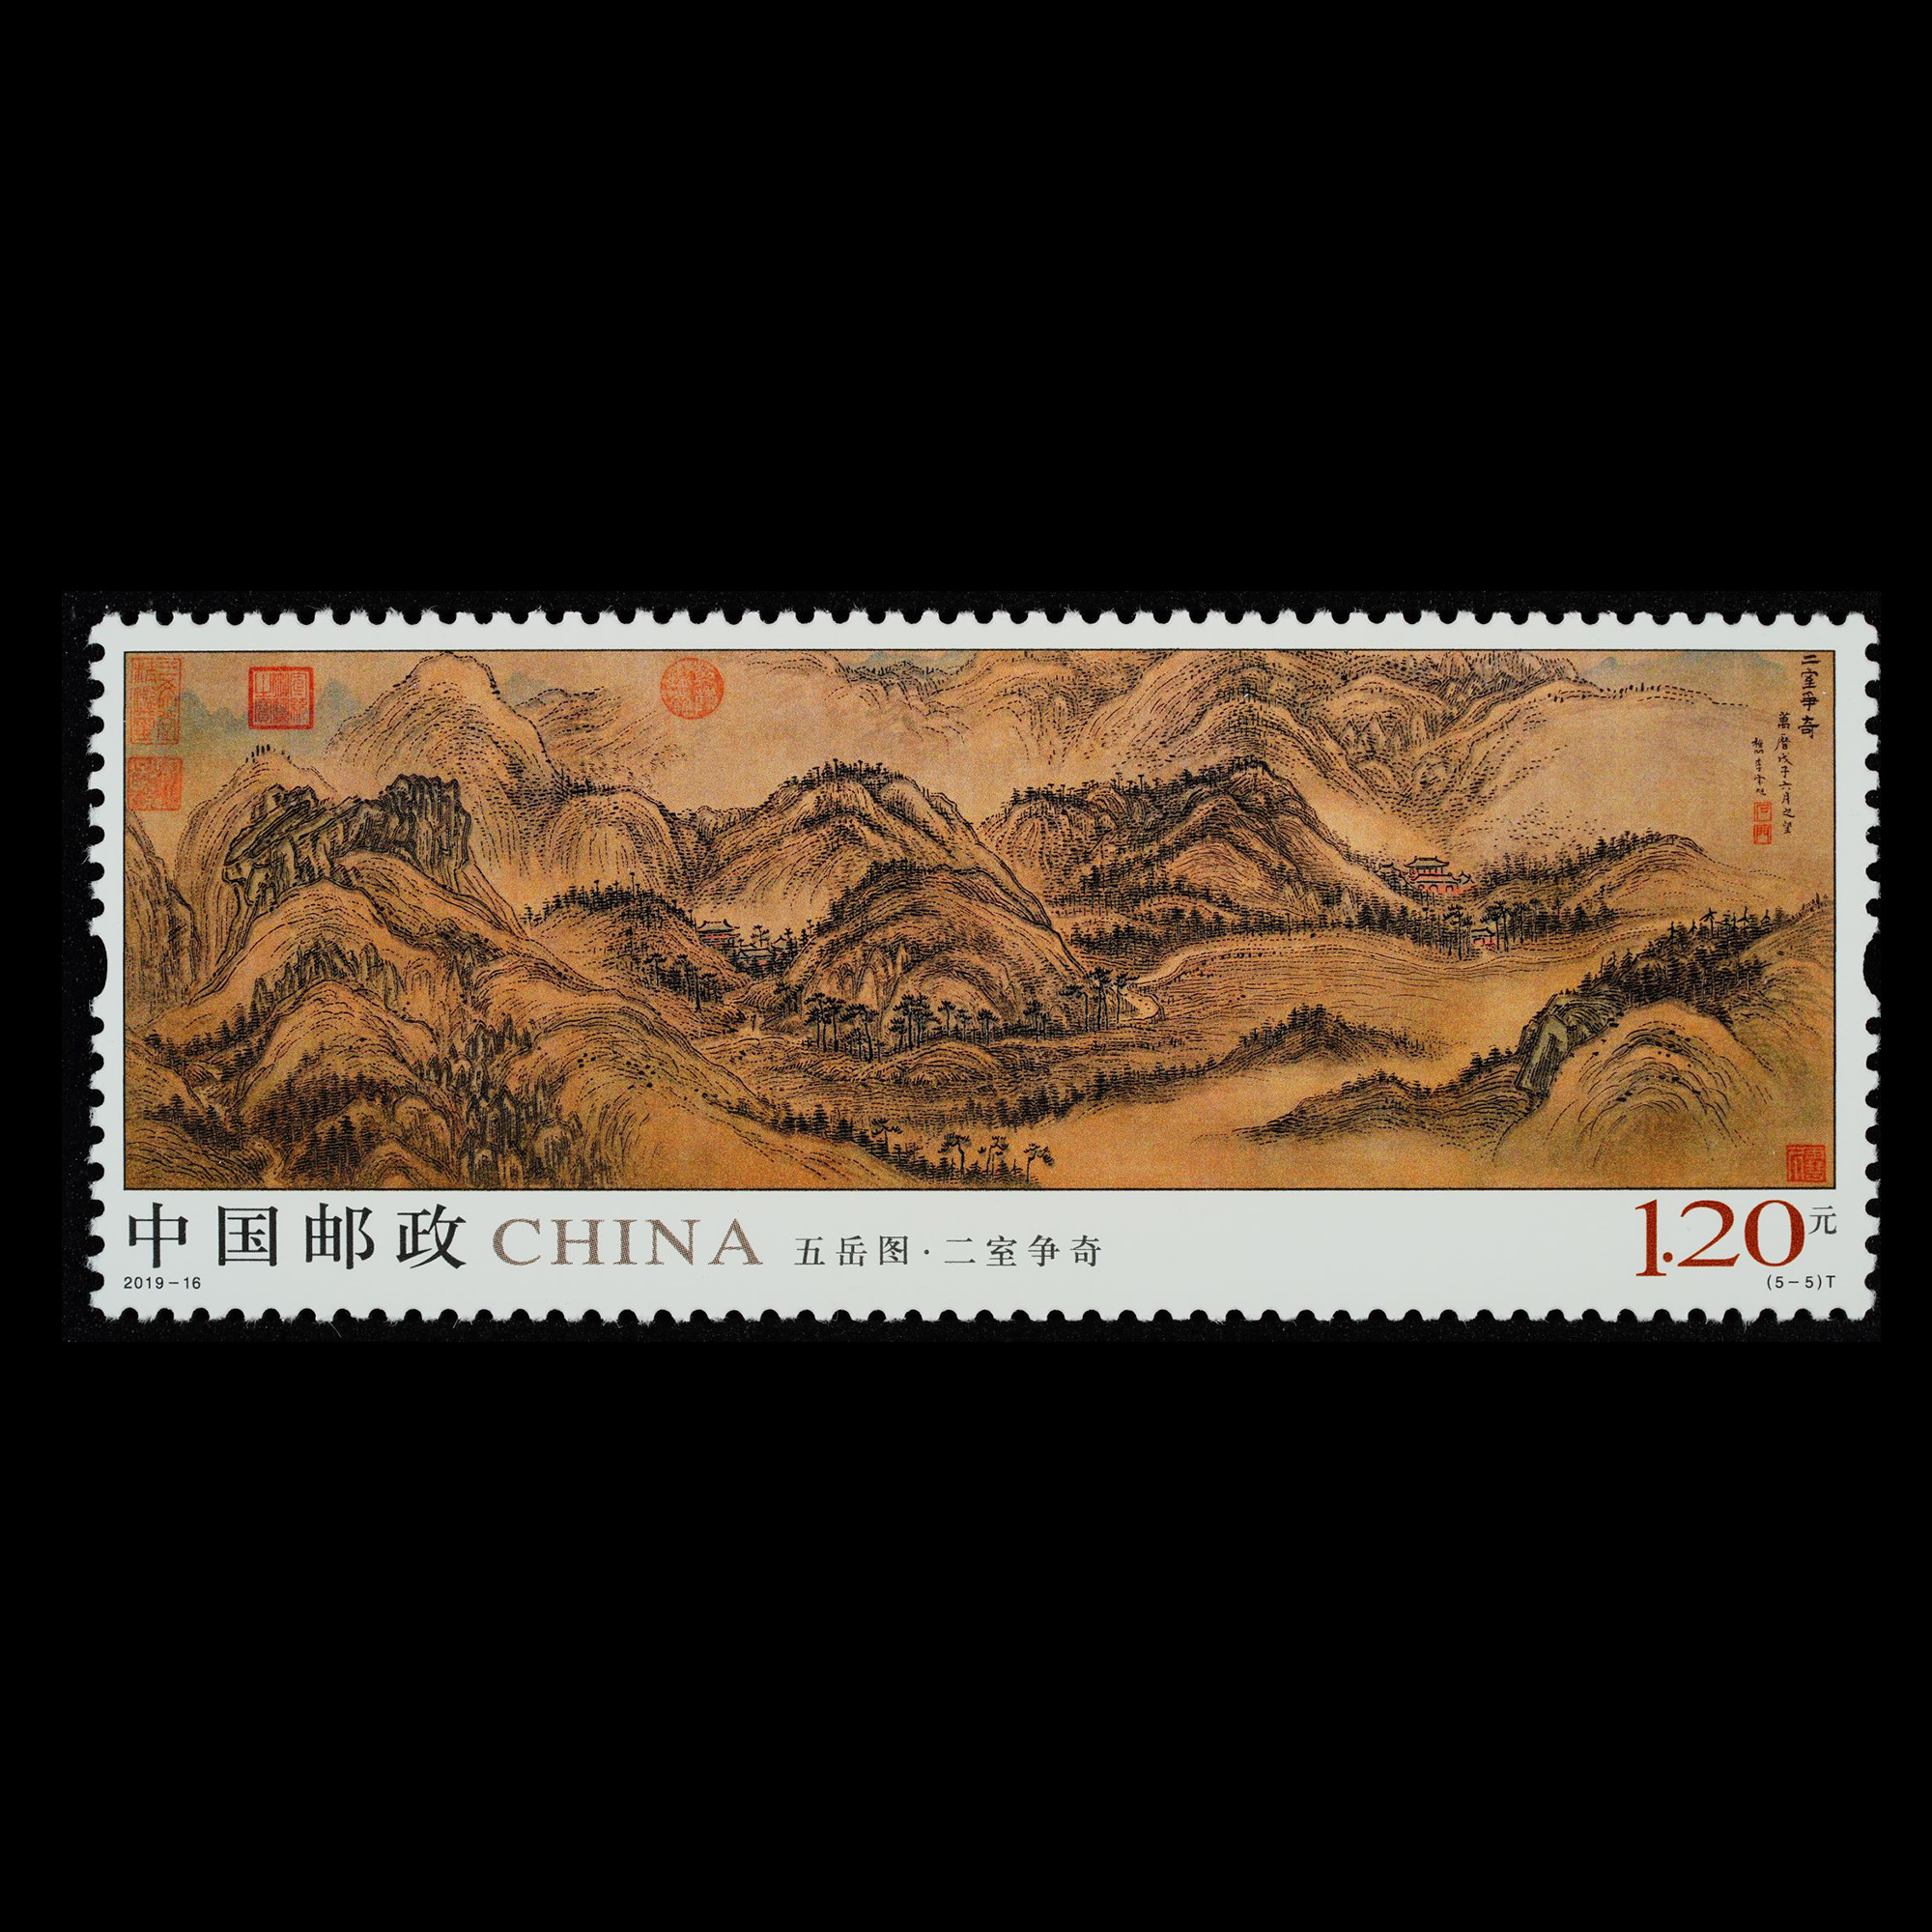 邮票名称:五岳图(t) 发行日期:2019-08-03 图序 面值 图案名称 发行量